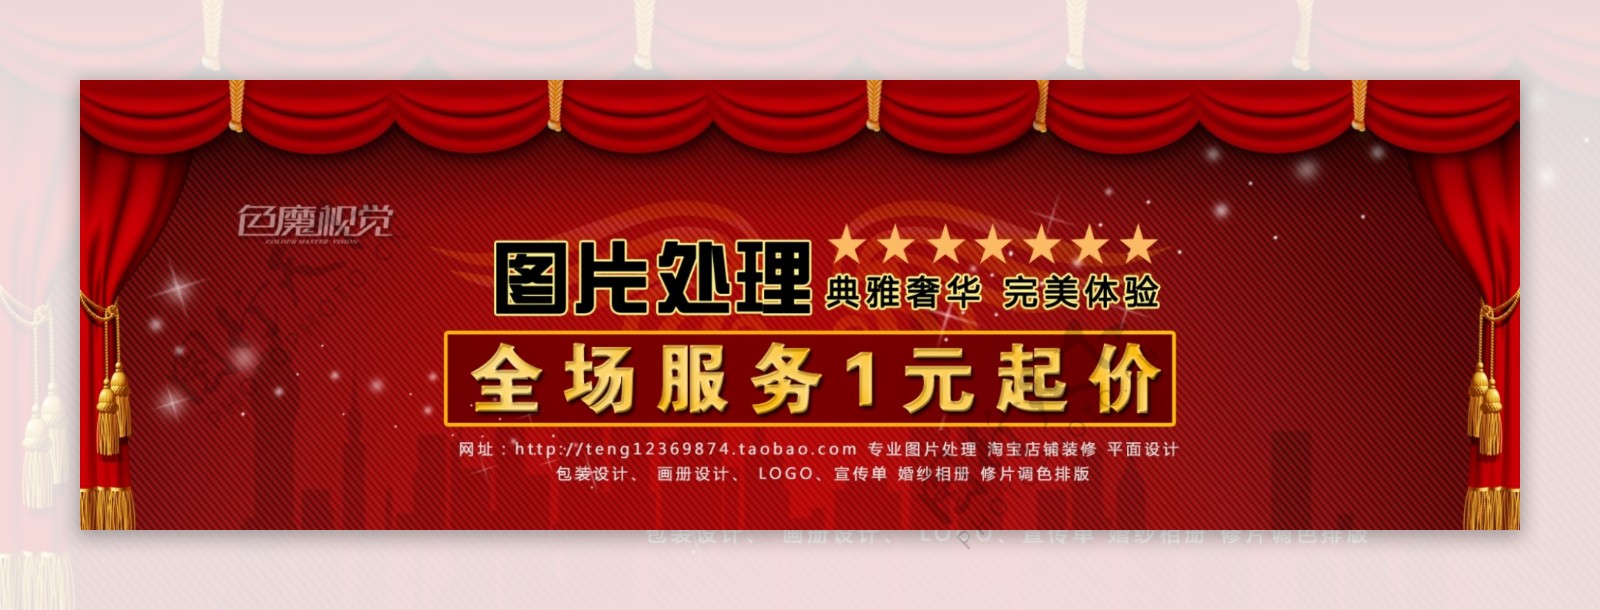 淘宝春节促销首页海报图片